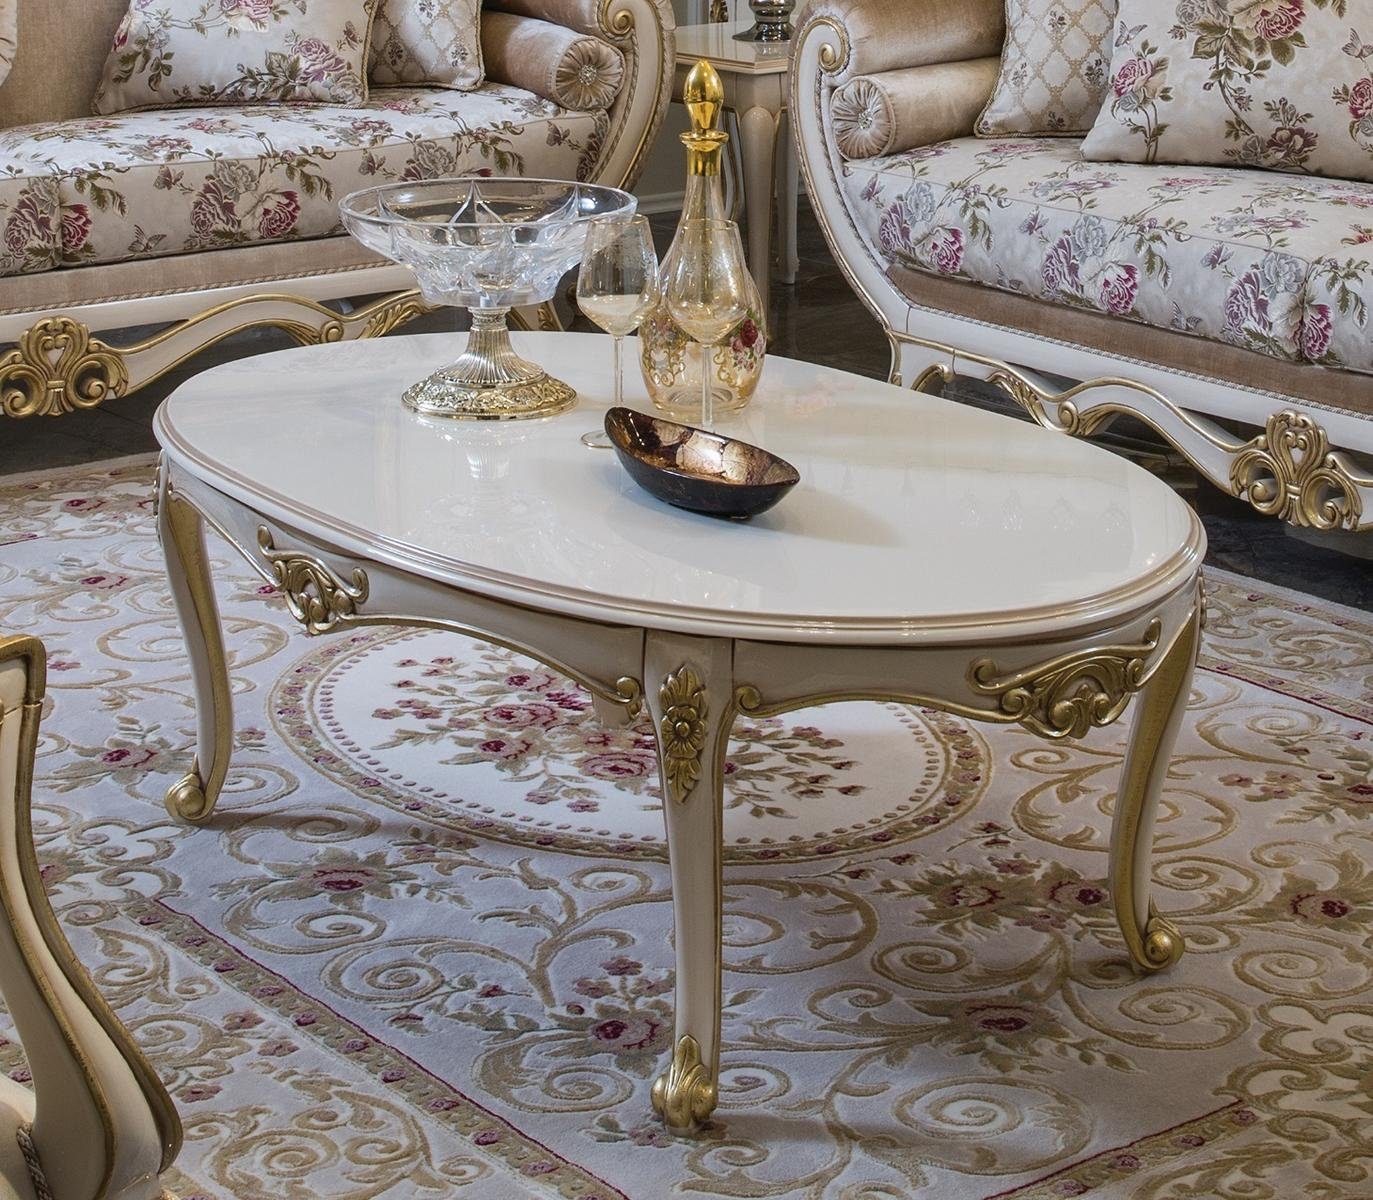 Couchtisch Möbel, Wohnzimmertisch JVmoebel Beistelltisch Wohnzimmertisch Luxus Luxus Tische Design Möbel Beistelltisch Tische Couchtisch Couchtisch Design